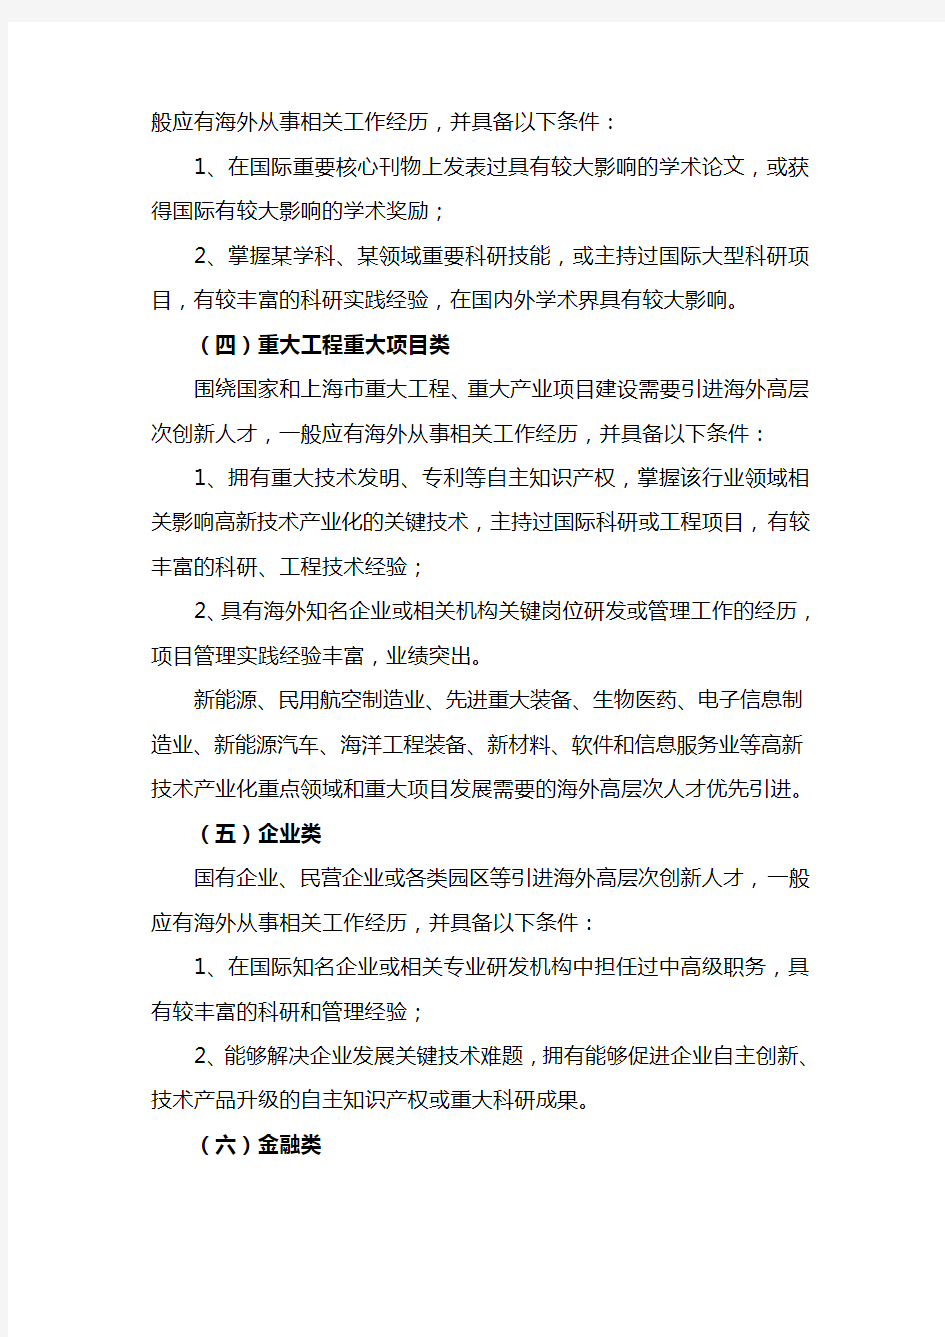 上海海外高层次人才引进标准 - 上海杨浦“3310”